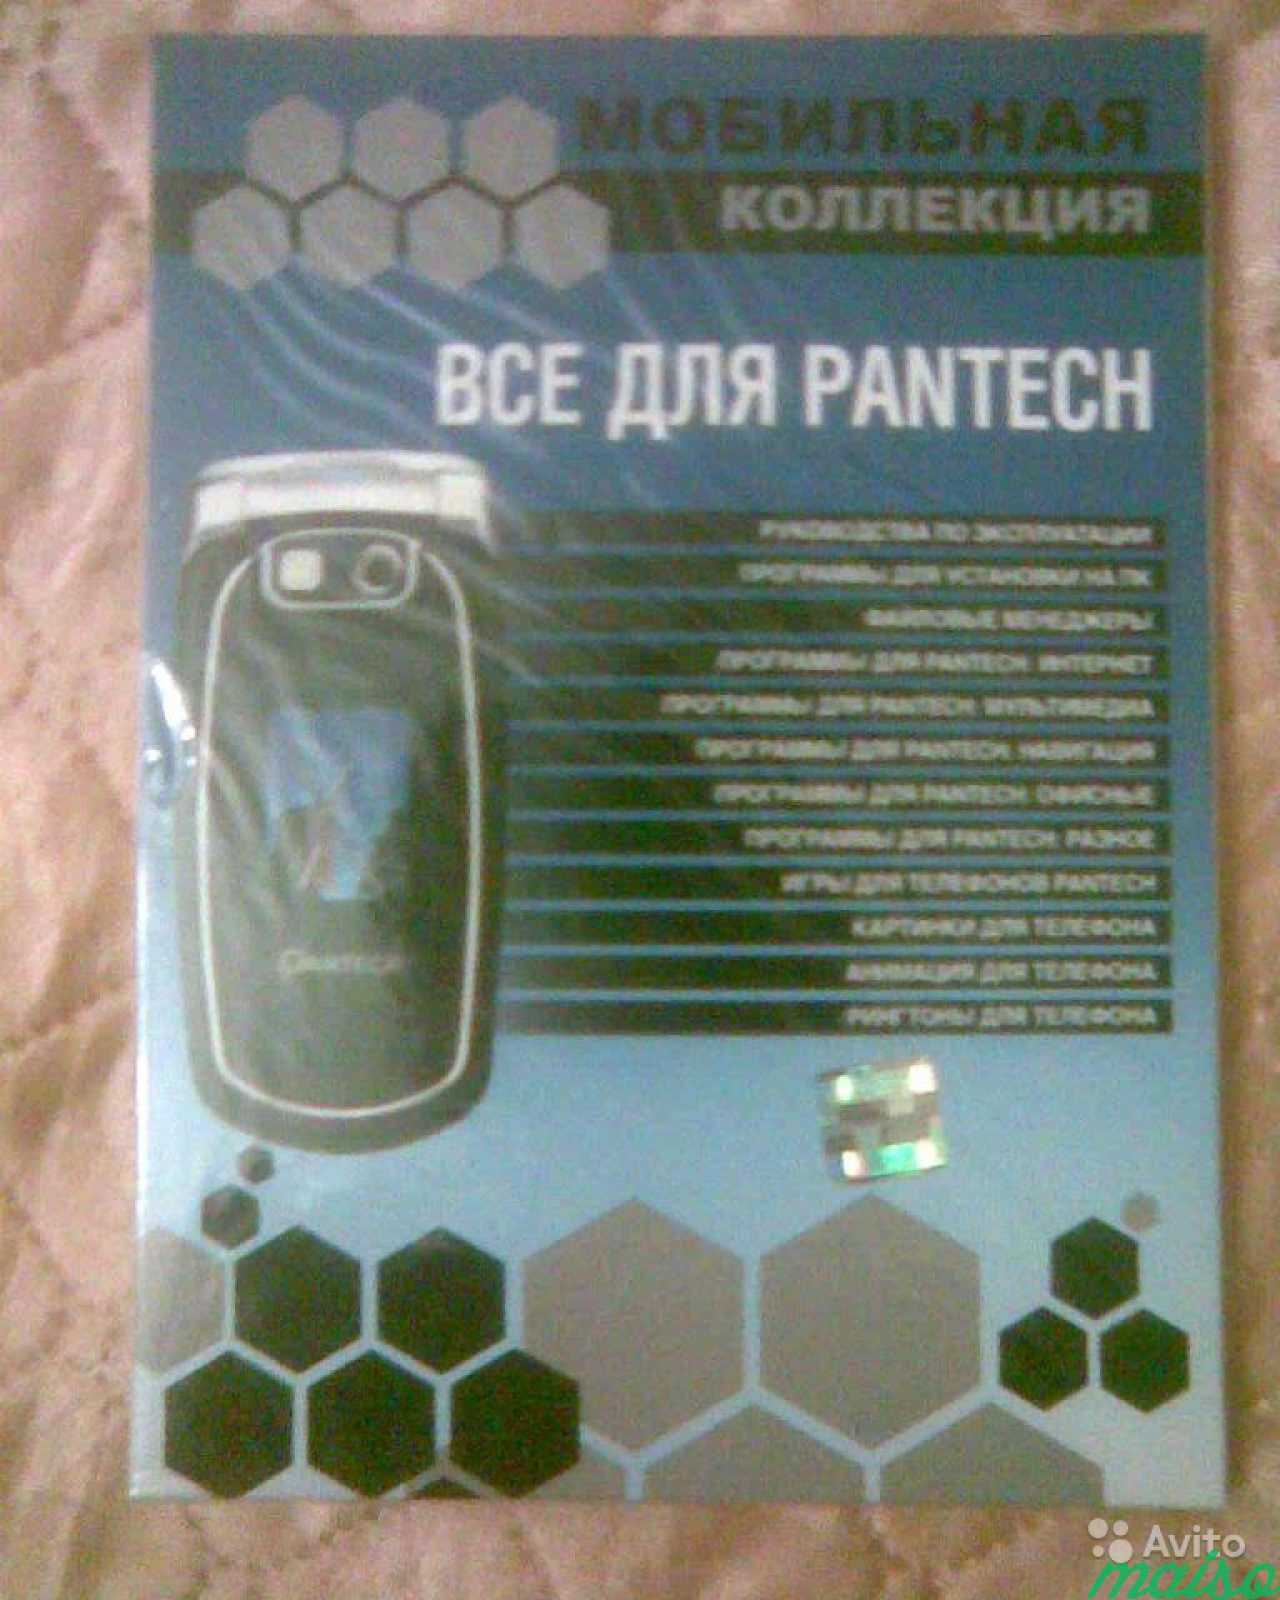 Прогрыммы для мобильных телефонов в Санкт-Петербурге. Фото 5